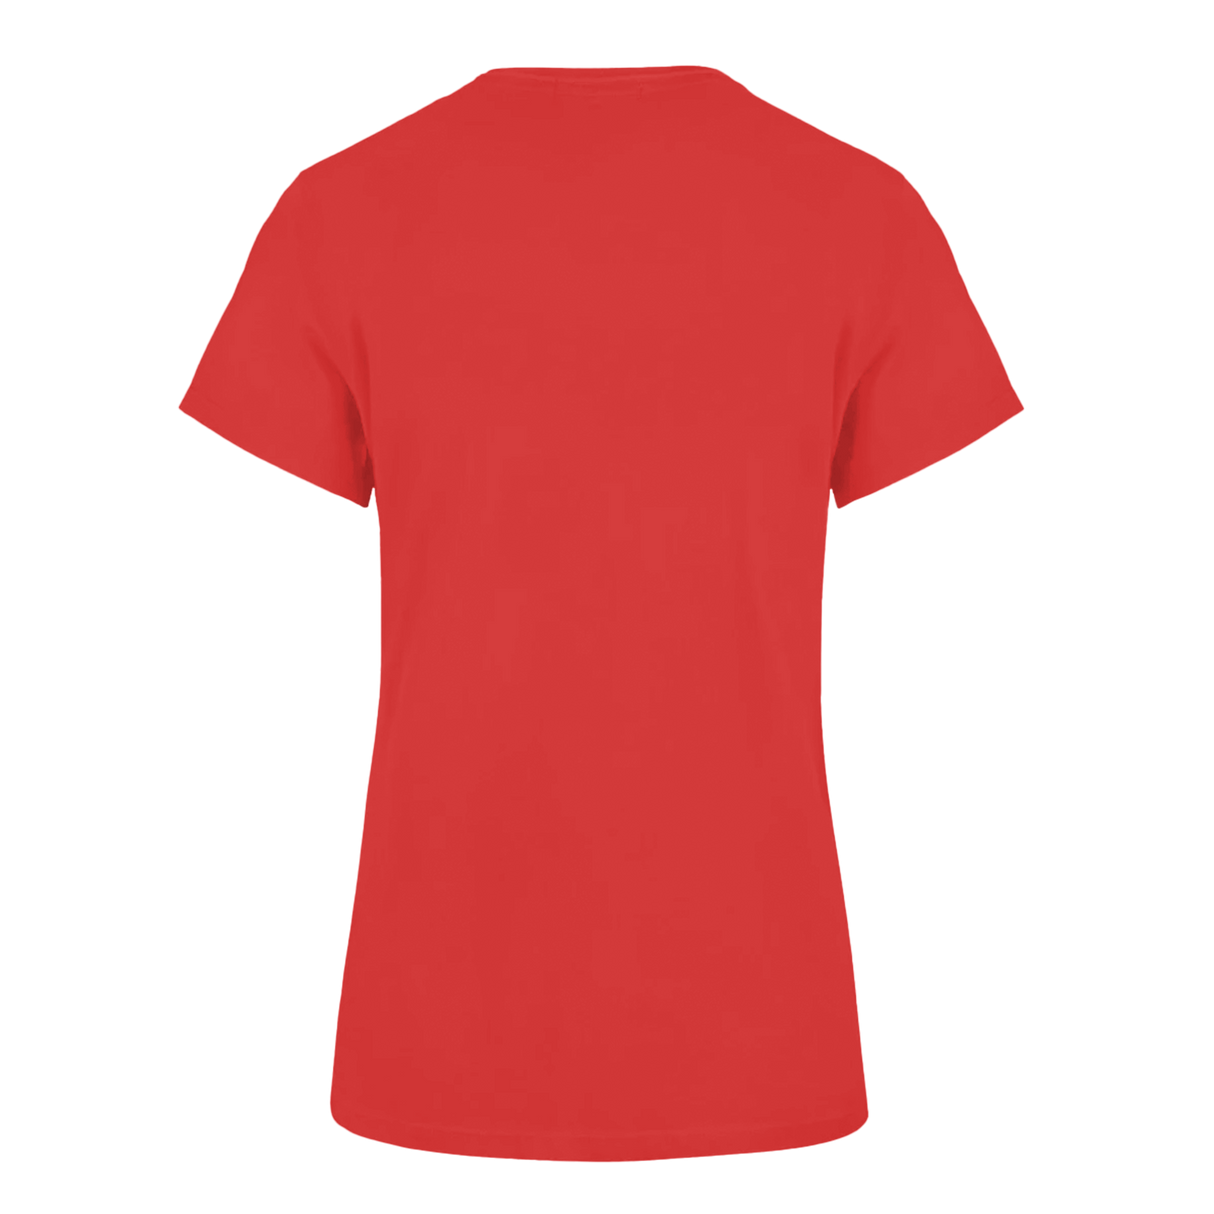 Kansas City Chiefs Crown Women's Short Sleeve T-Shirt